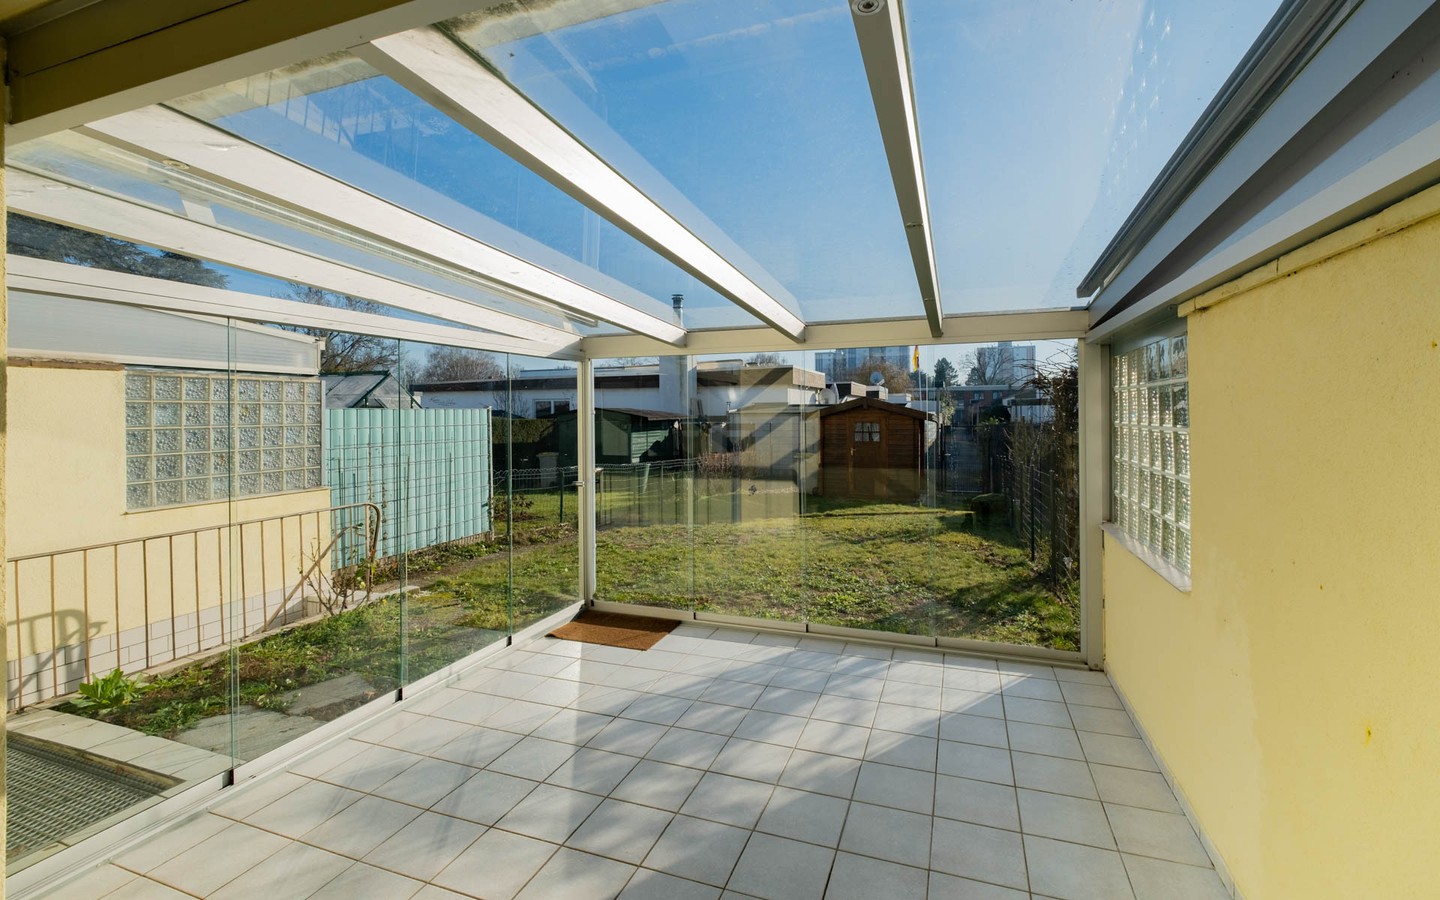 Terrasse - Reihenmittelhaus mit großem Garten, Garage und viel Gestaltungspotenzial